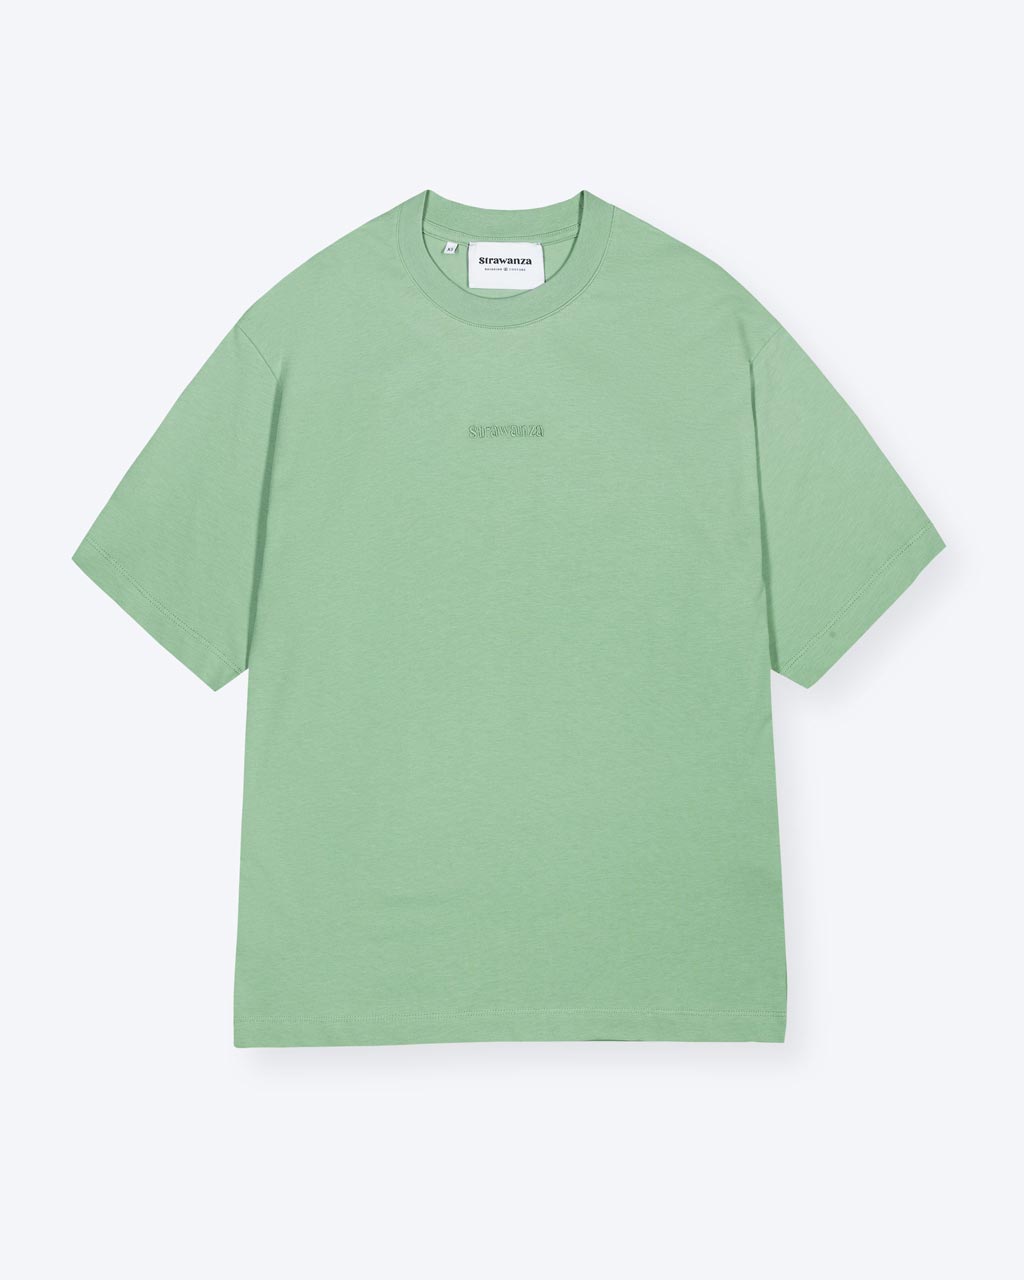 Ein grünes T-Shirt mit einem Ton in Ton Schriftzug auf der Brust. 